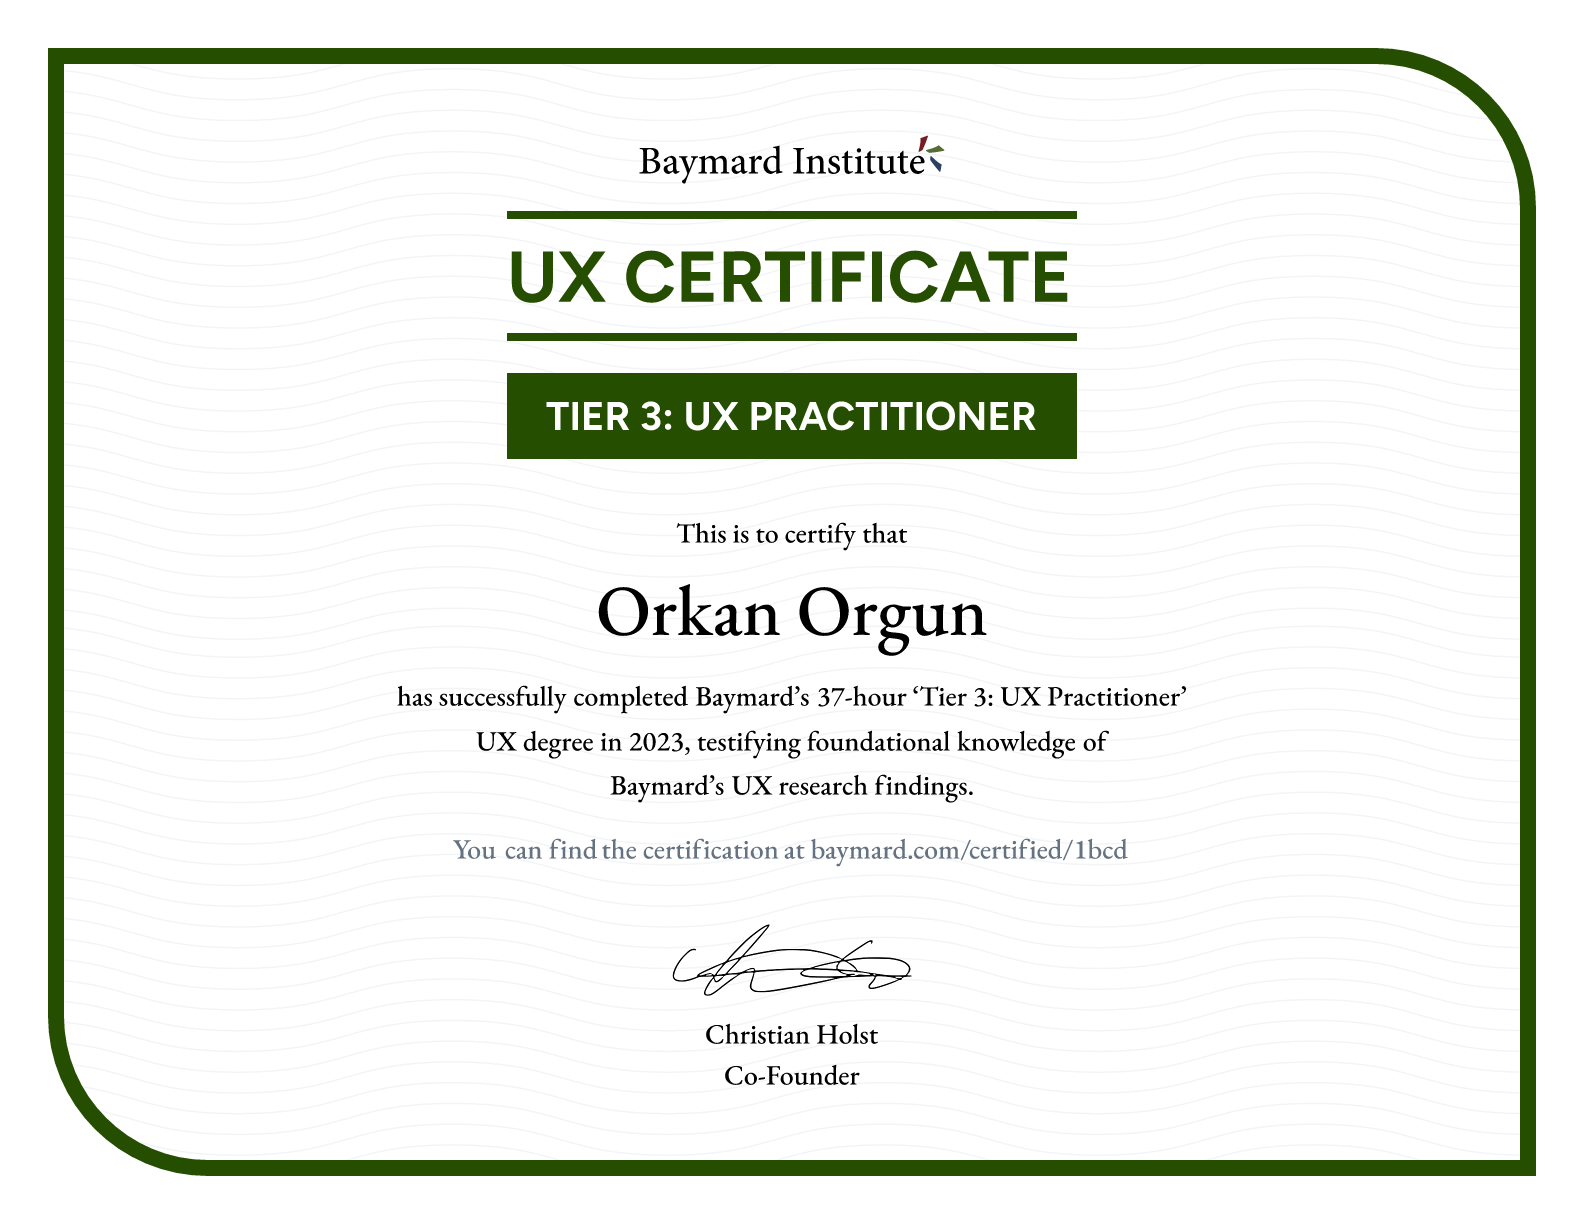 Orkan Orgun’s certificate